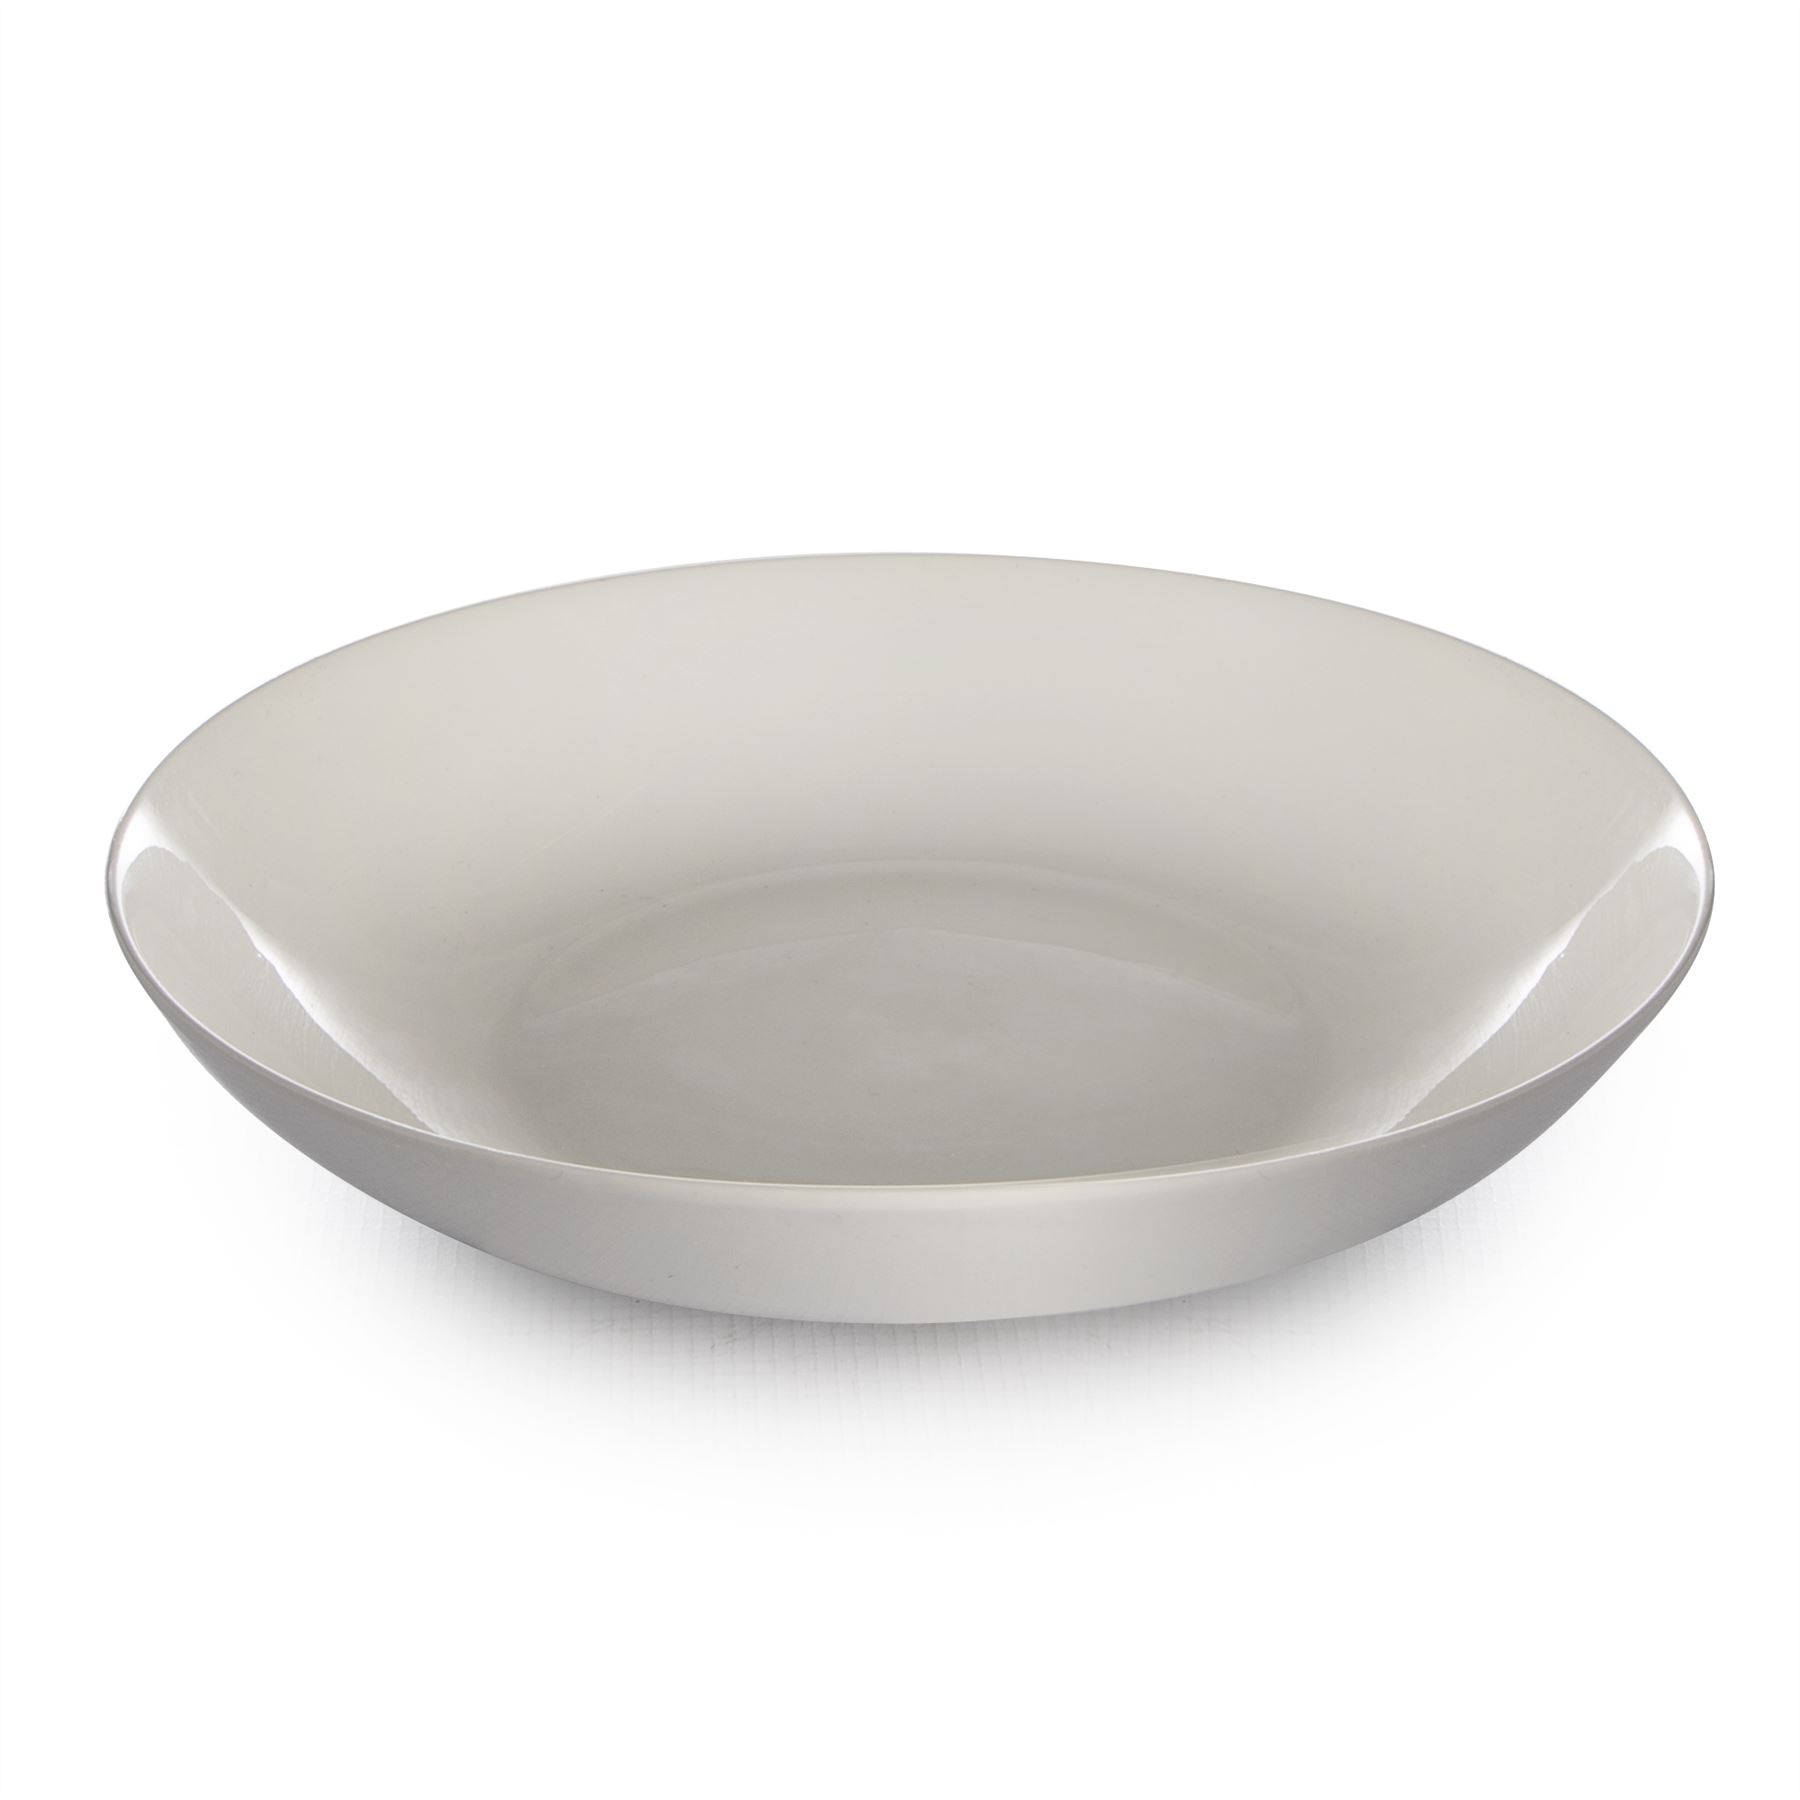 Porcelain Pasta Bowls - Set of 4 | M&W